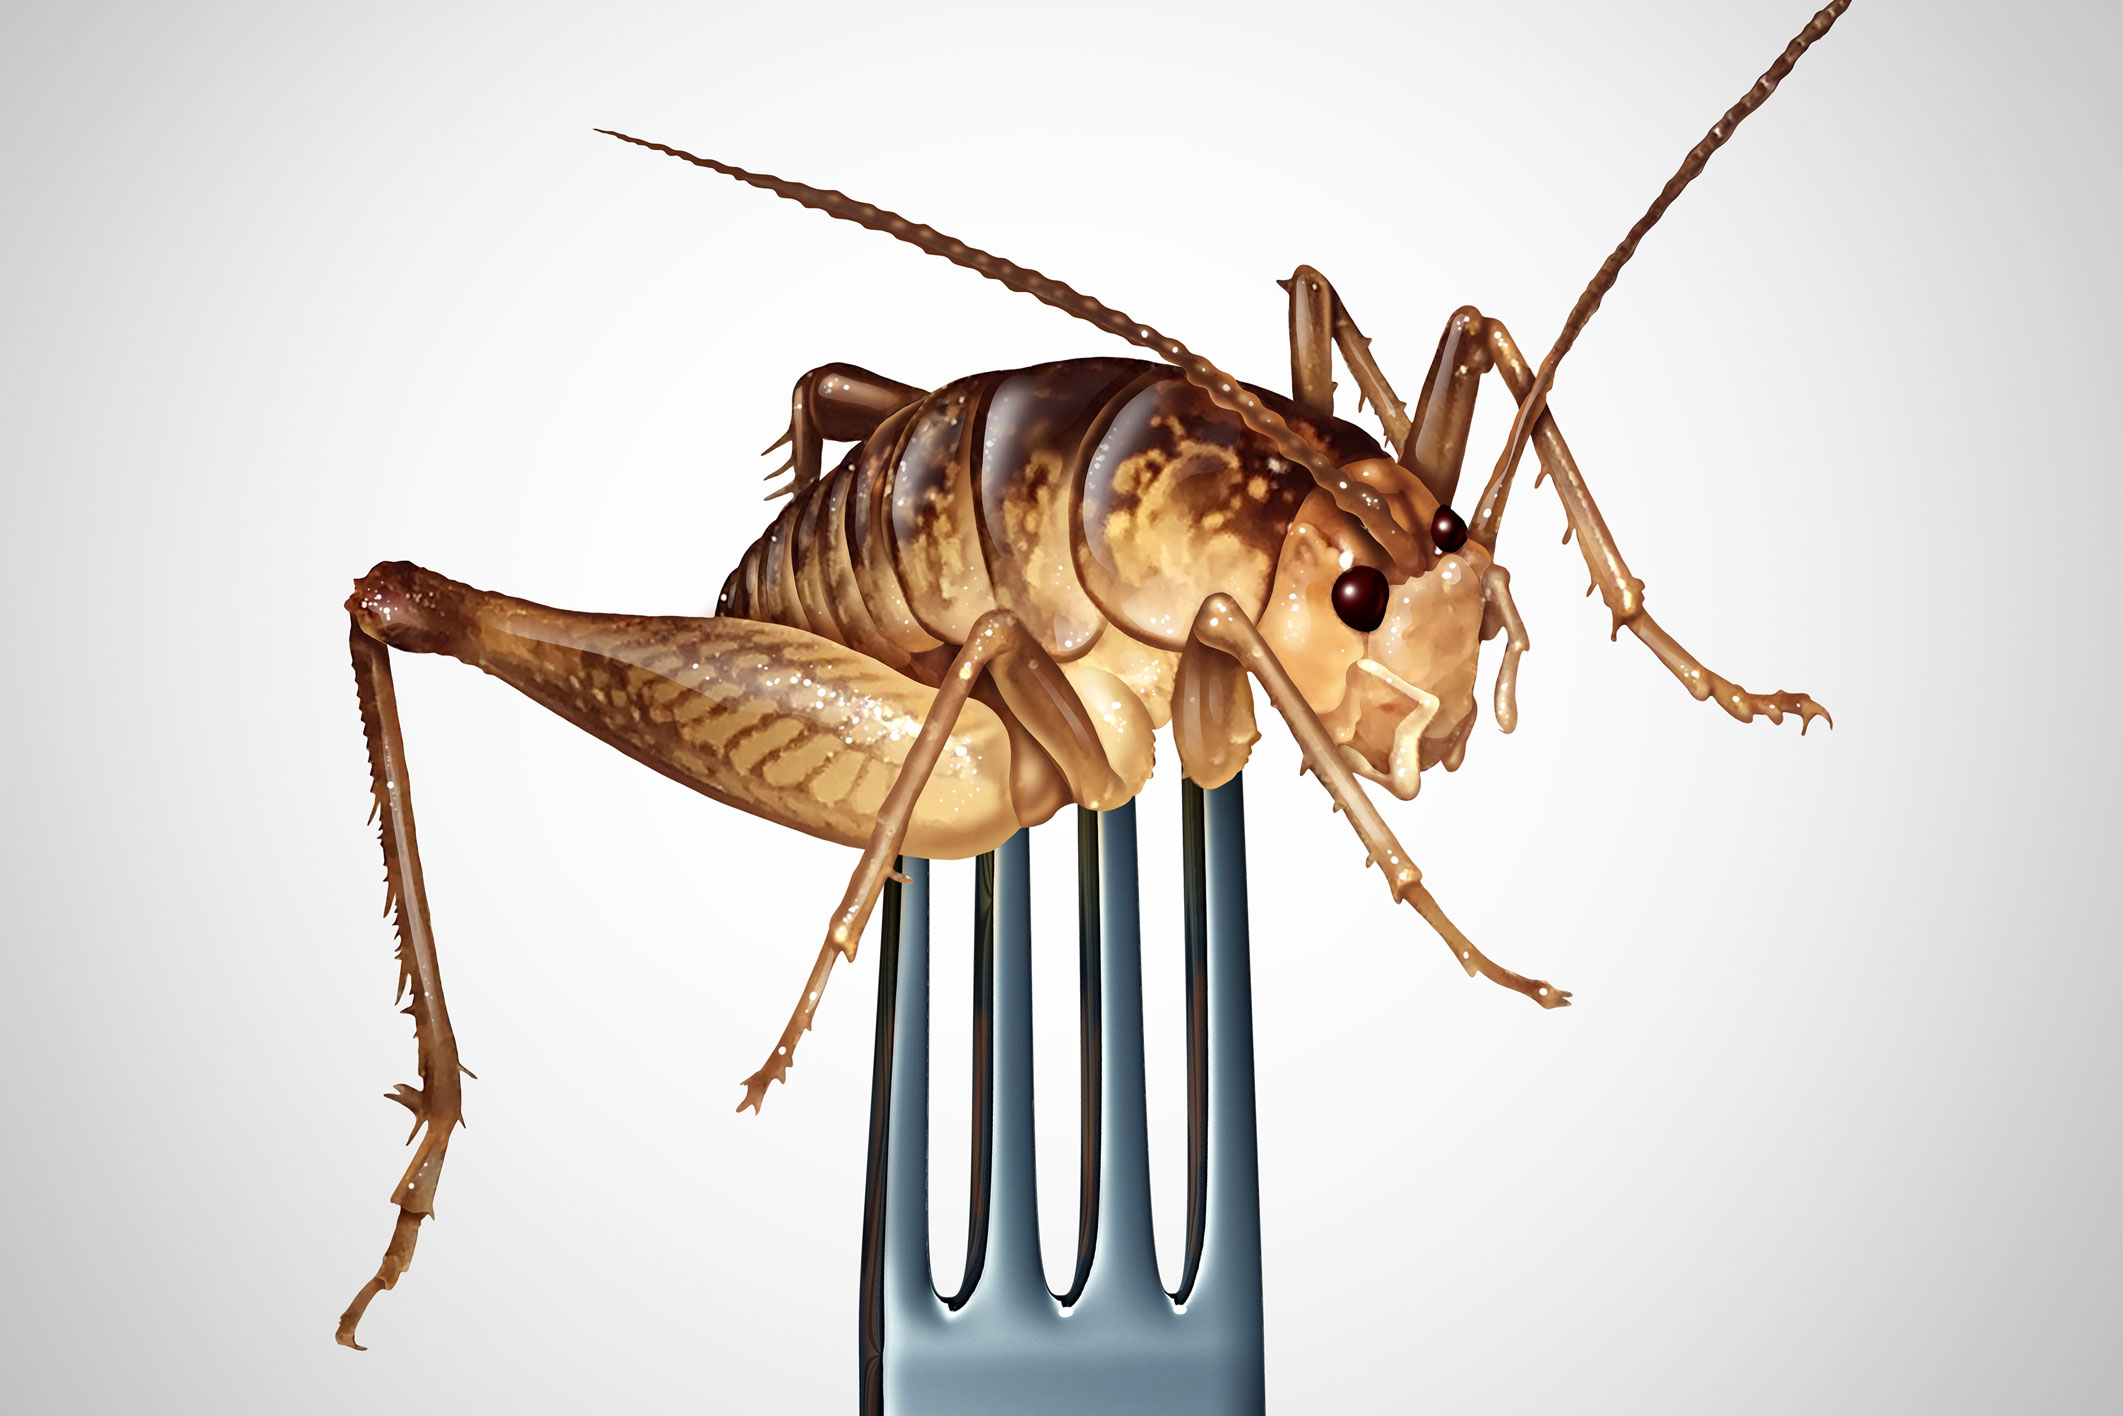 Des insectes pour nourrir la planète